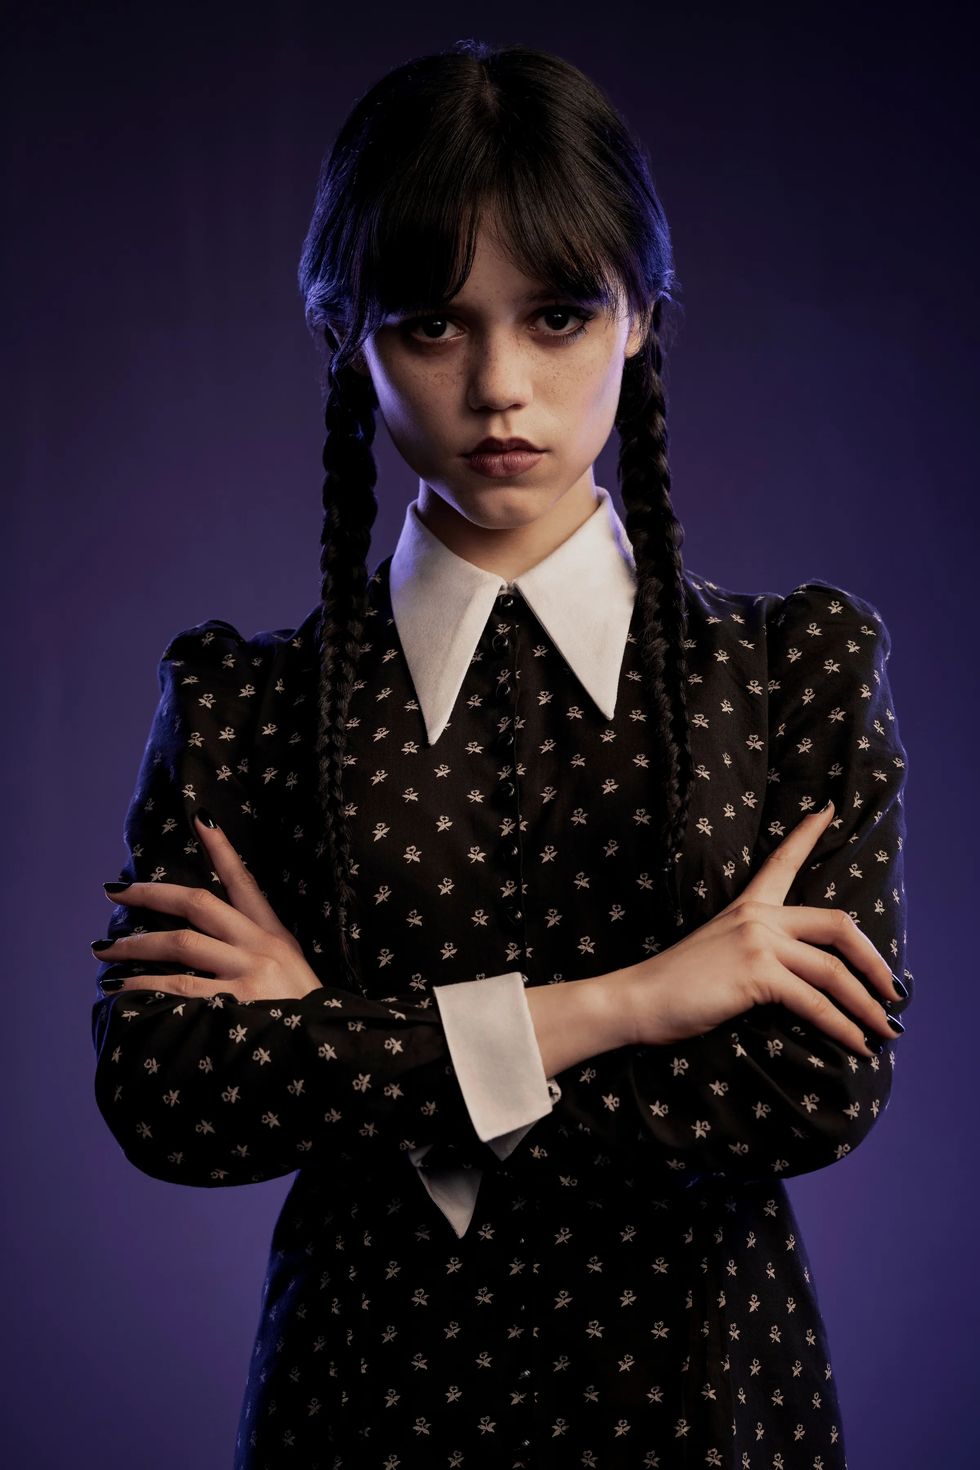 Tendencia: estilo goth inspirado en Miércoles Addams